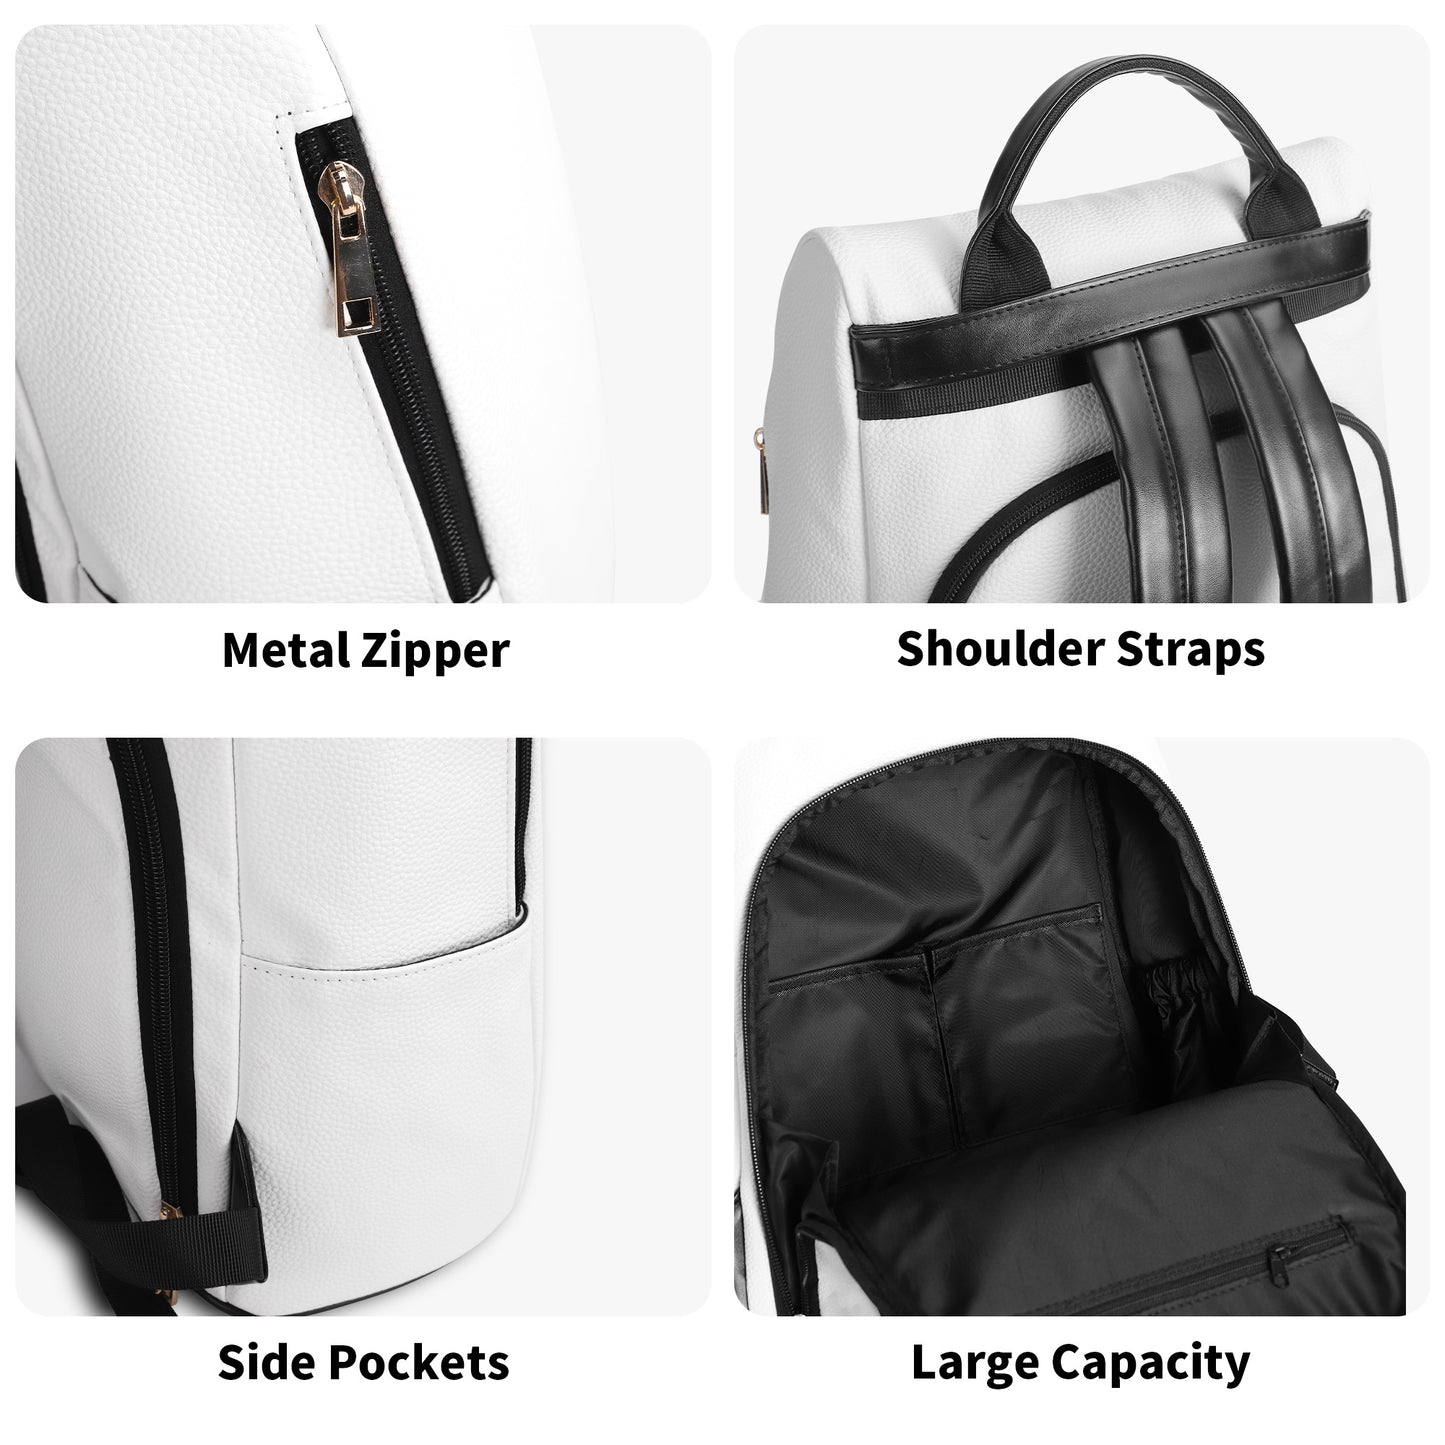 Nebular Anti-theft Backpack